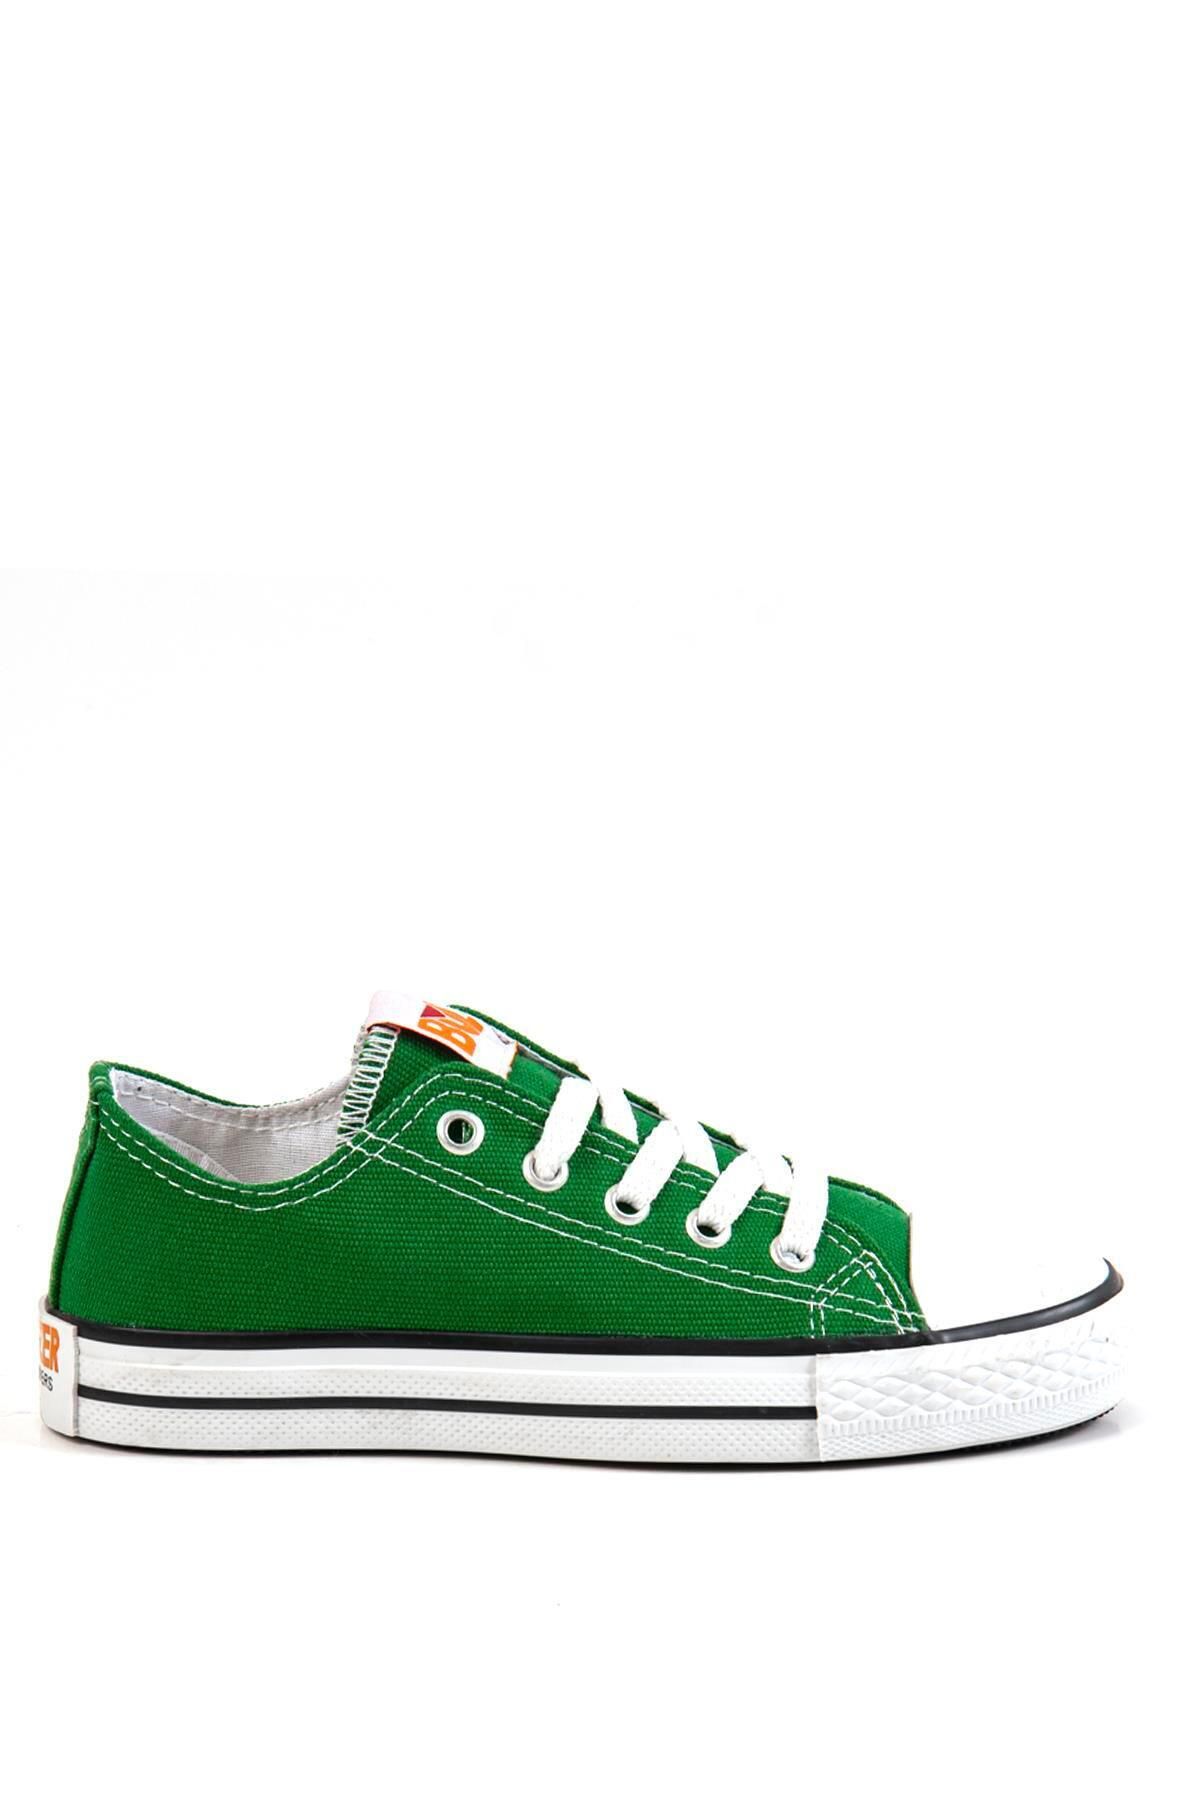 Bulldozer 231902 Yeşil Çocuk Sneakers